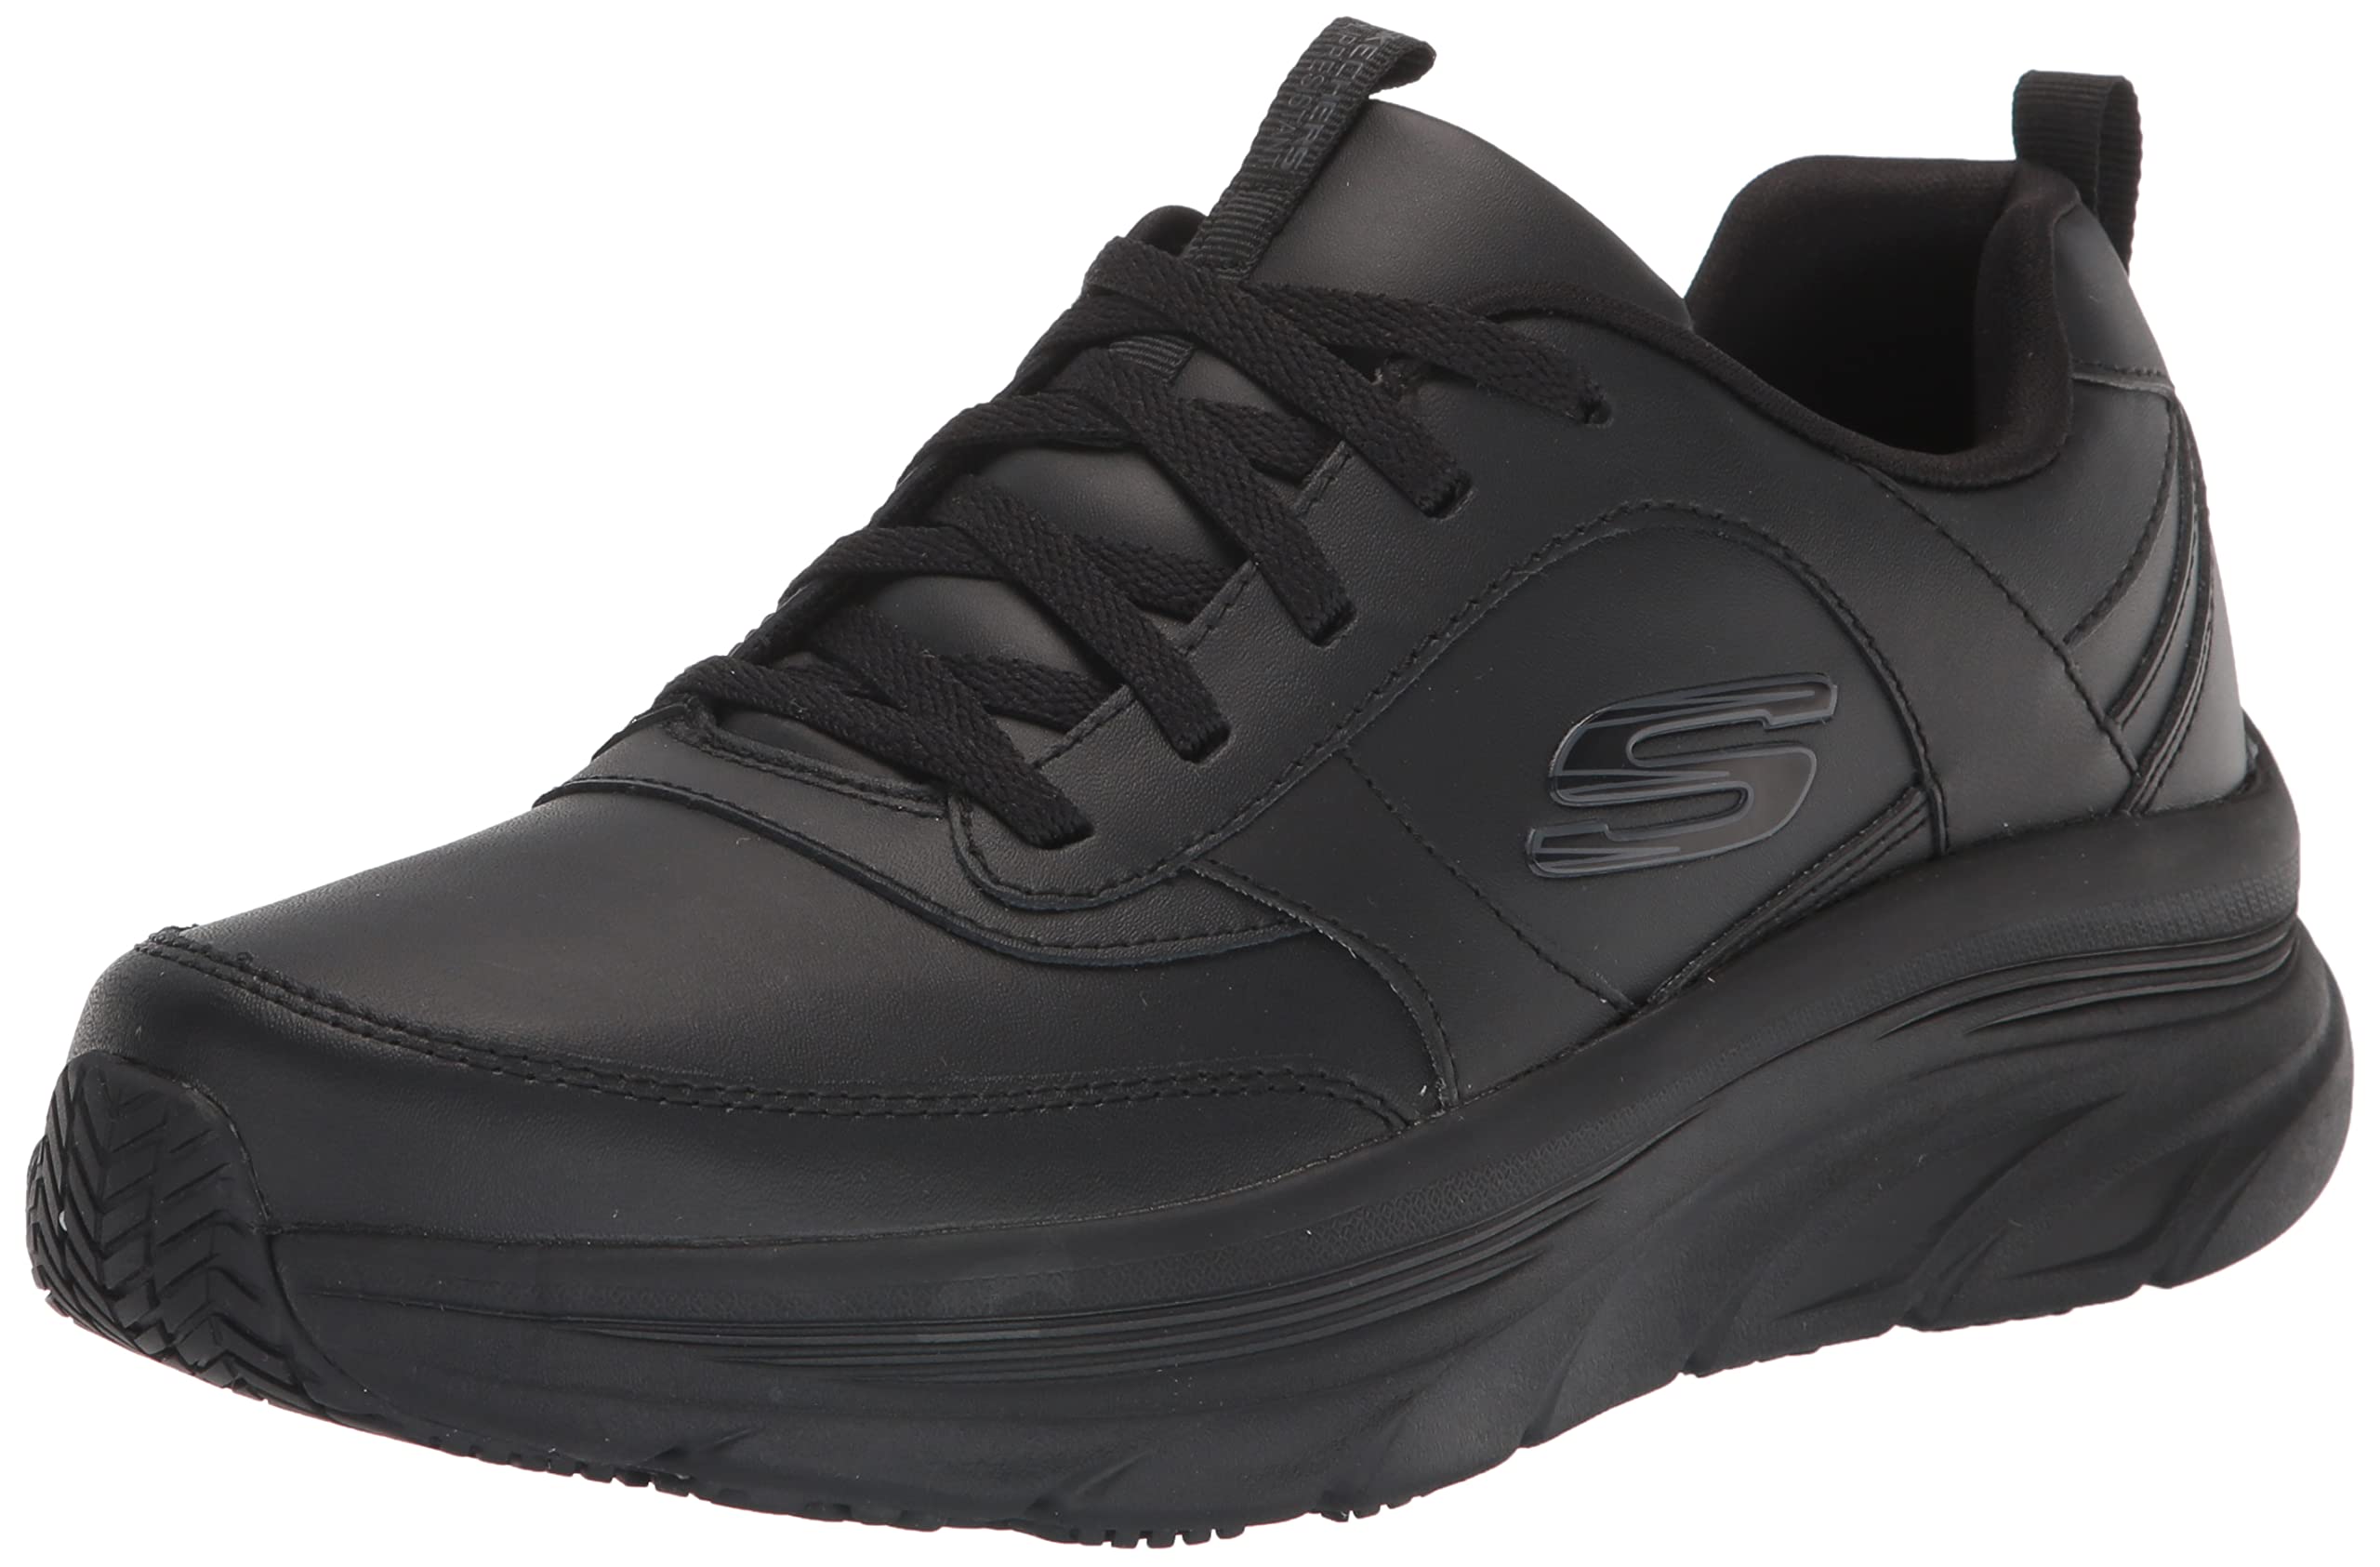 Skechers Men's Splendal Food Service Shoe, Black, 7 Wide — 🛍️ The ...